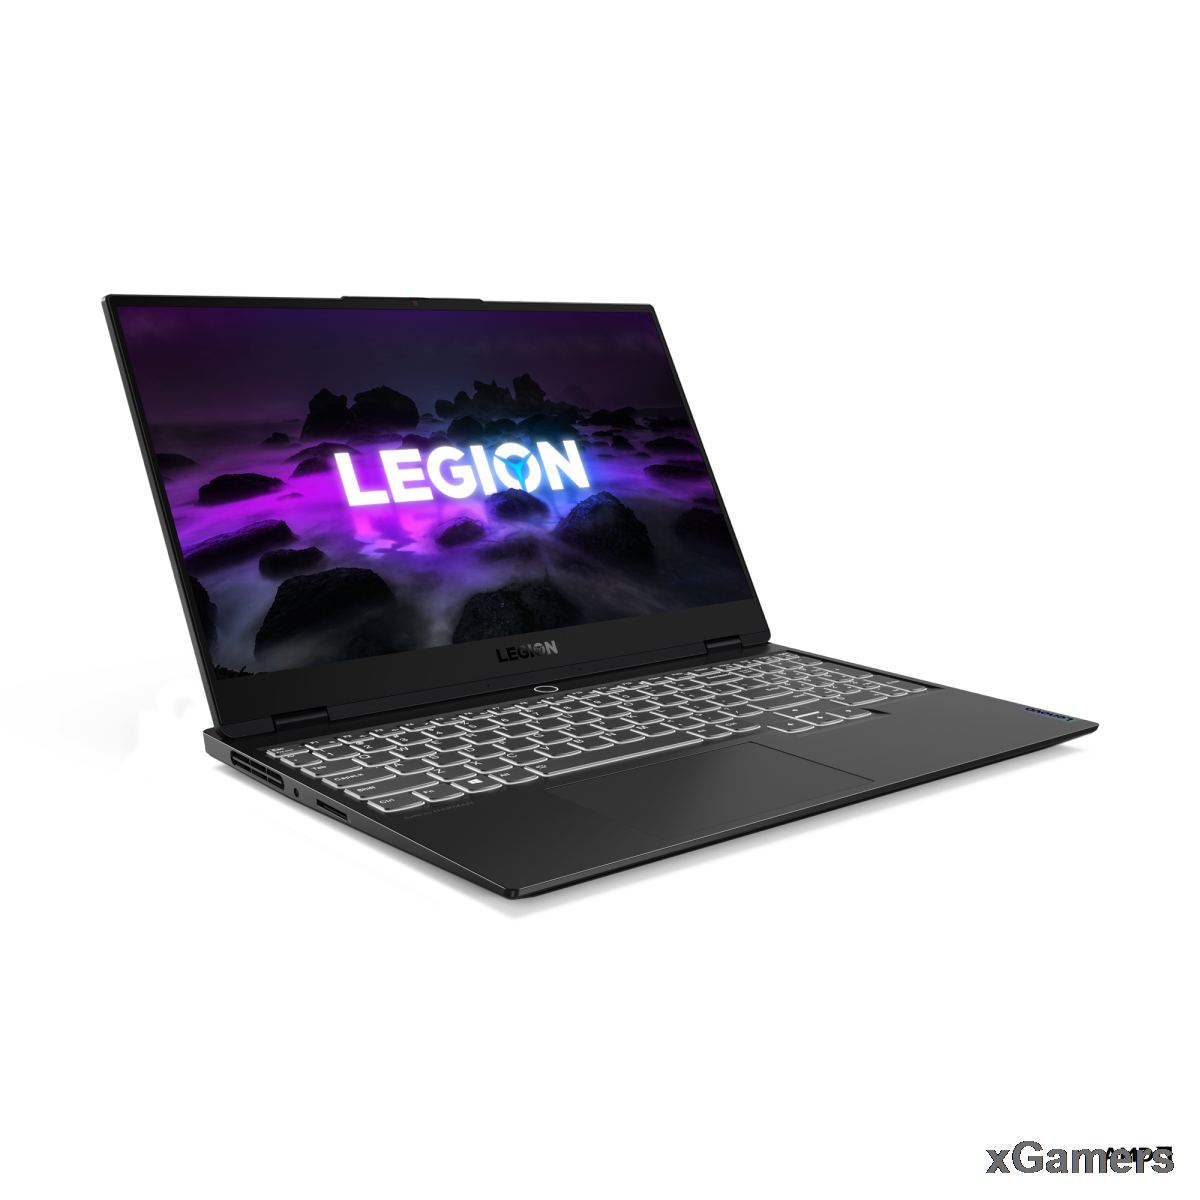 Внешний вид ноутбука Lenovo Legion 7